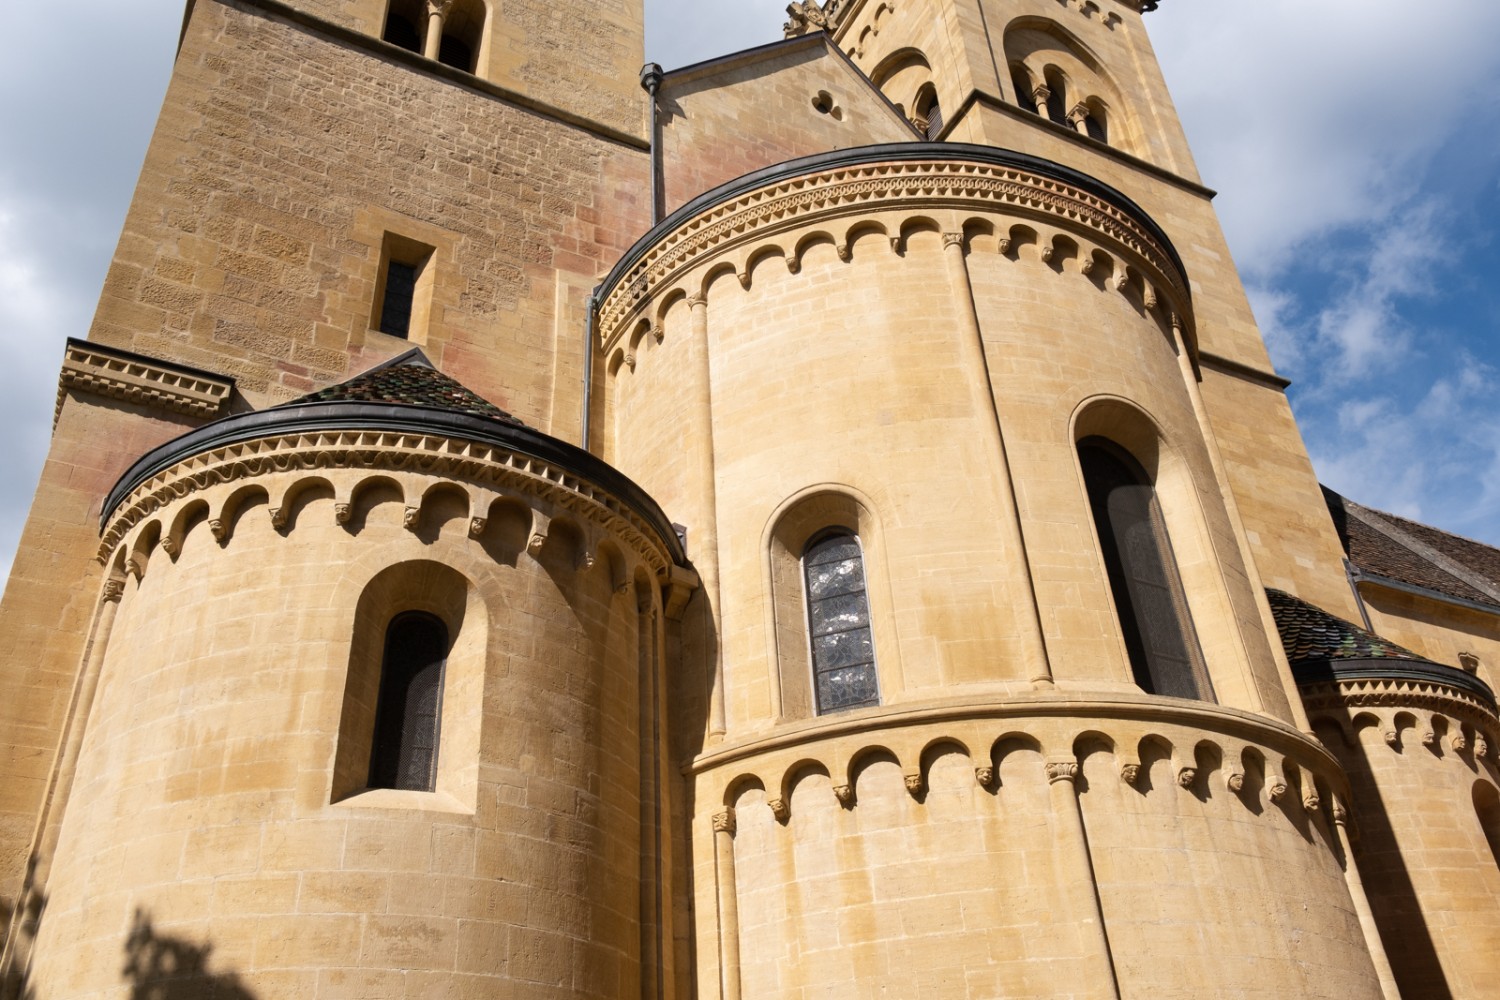 Edifiée aux 12e-13e siècles sur la colline du Château, l’imposante Collégiale est en cours de restauration.

